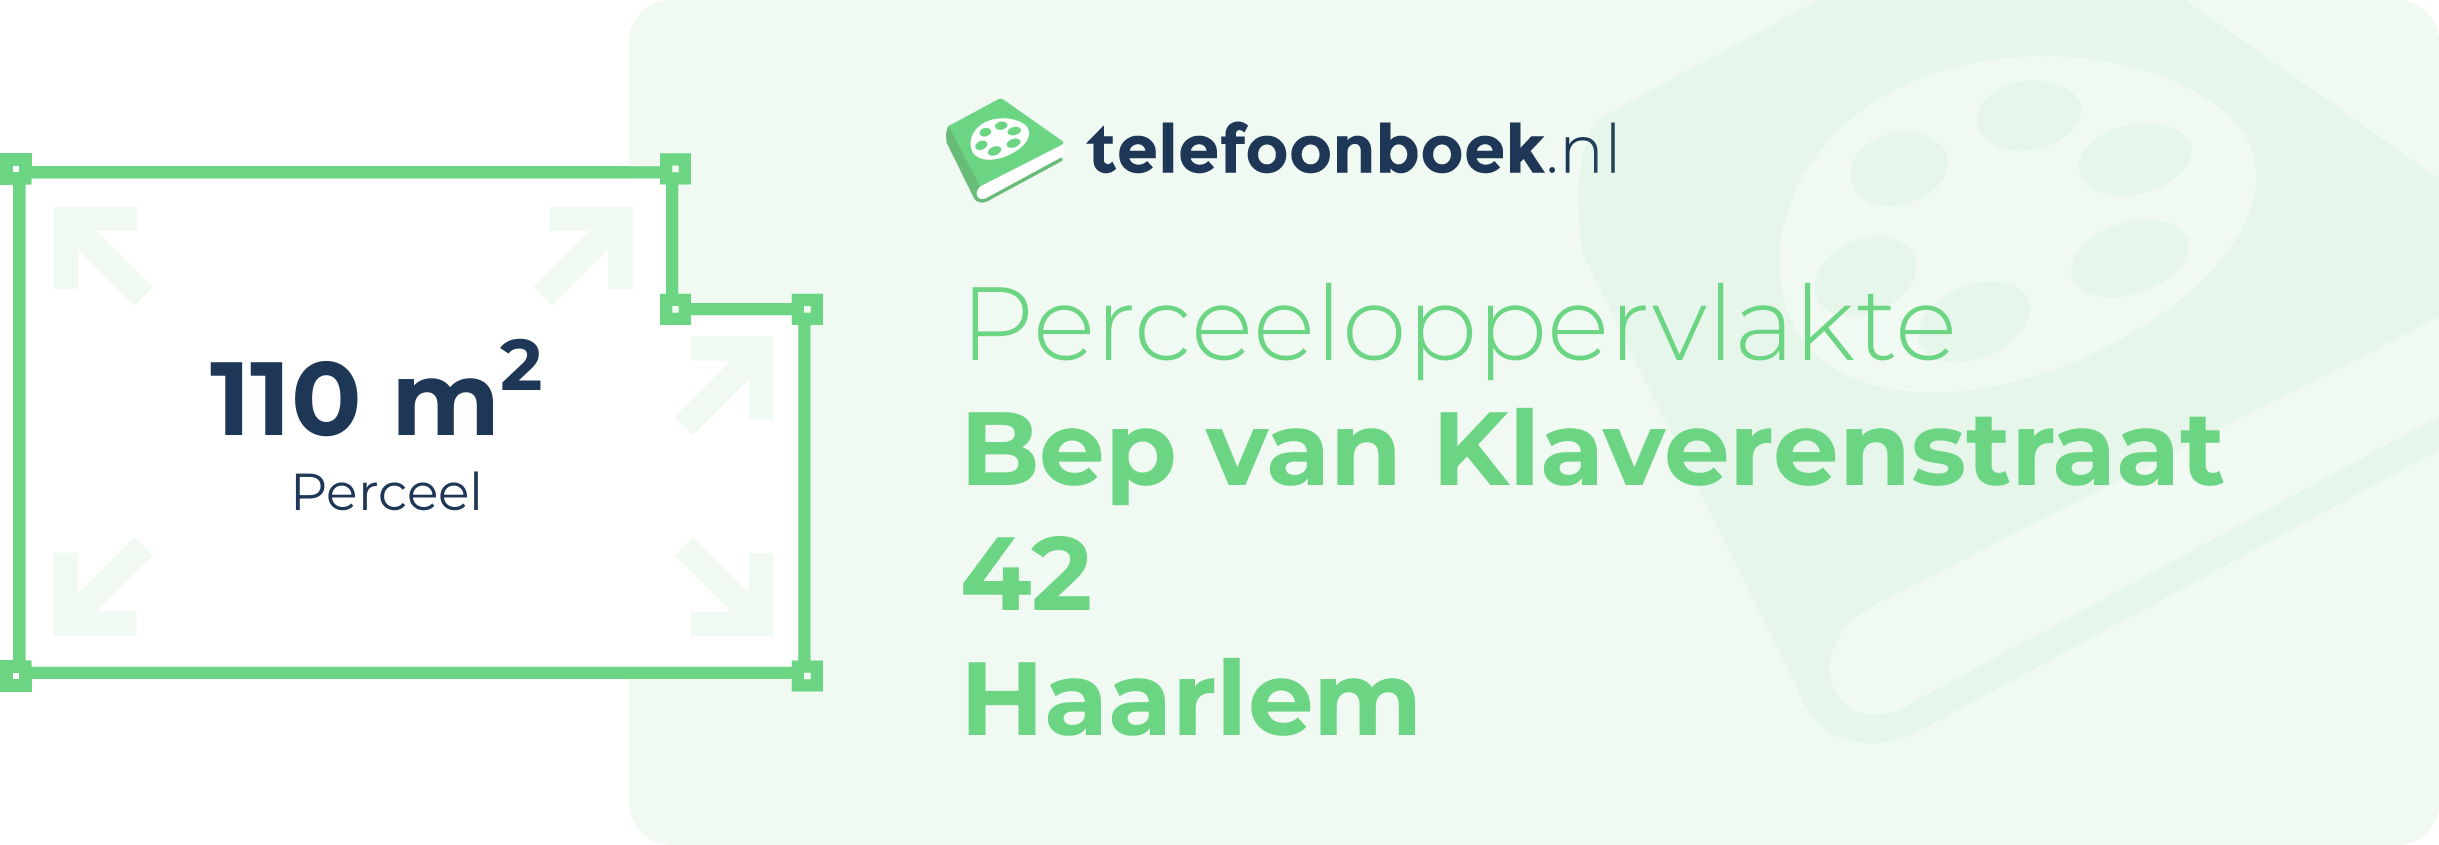 Perceeloppervlakte Bep Van Klaverenstraat 42 Haarlem